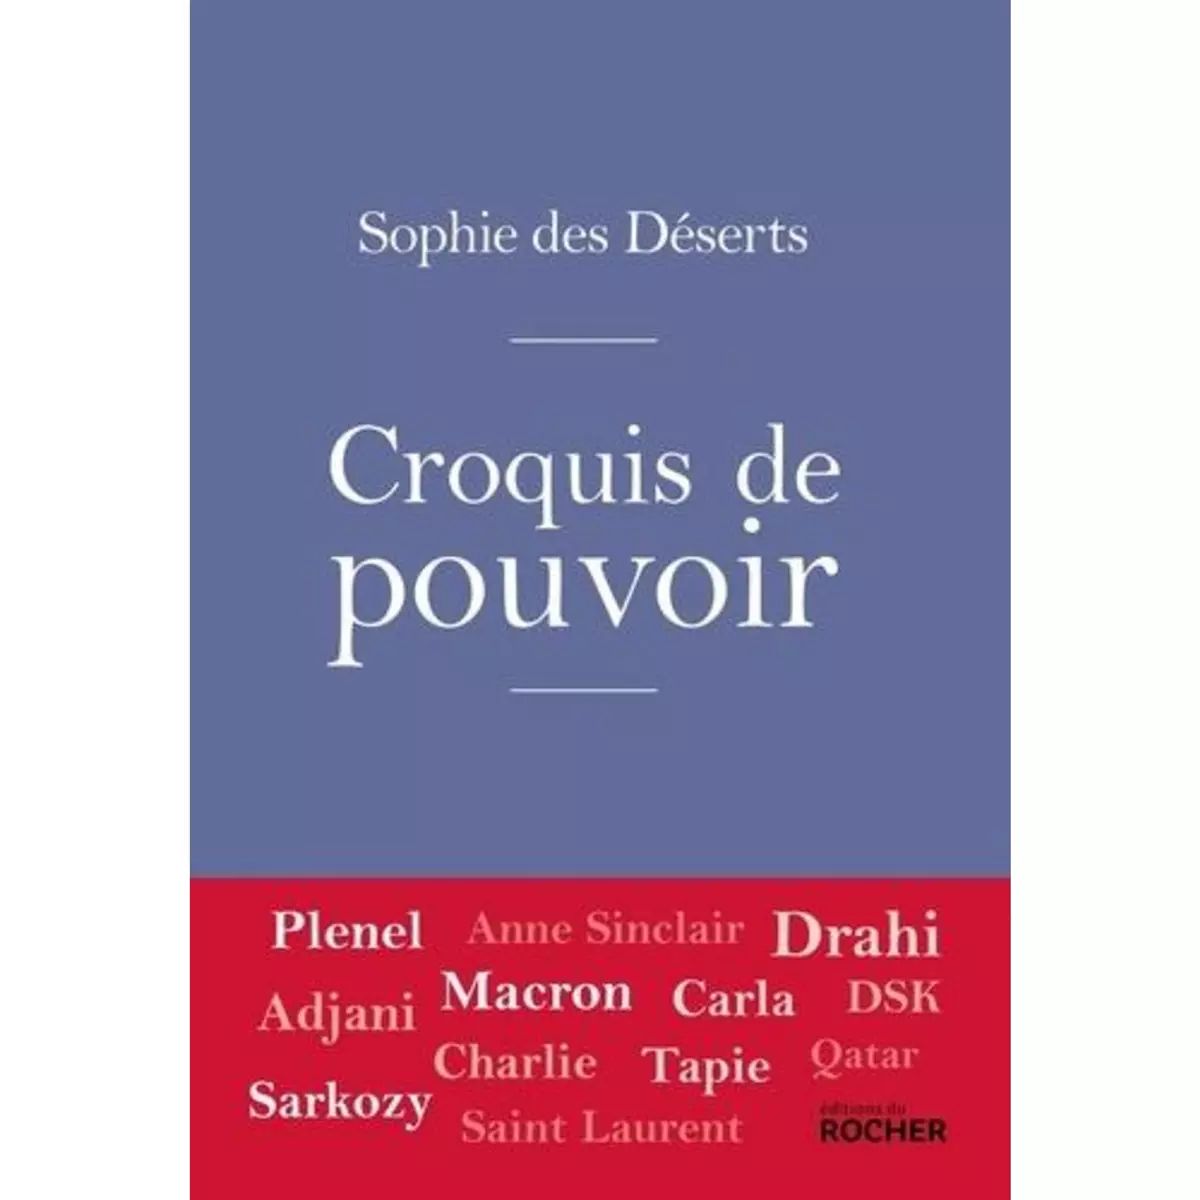  CROQUIS DE POUVOIR, Déserts Sophie des